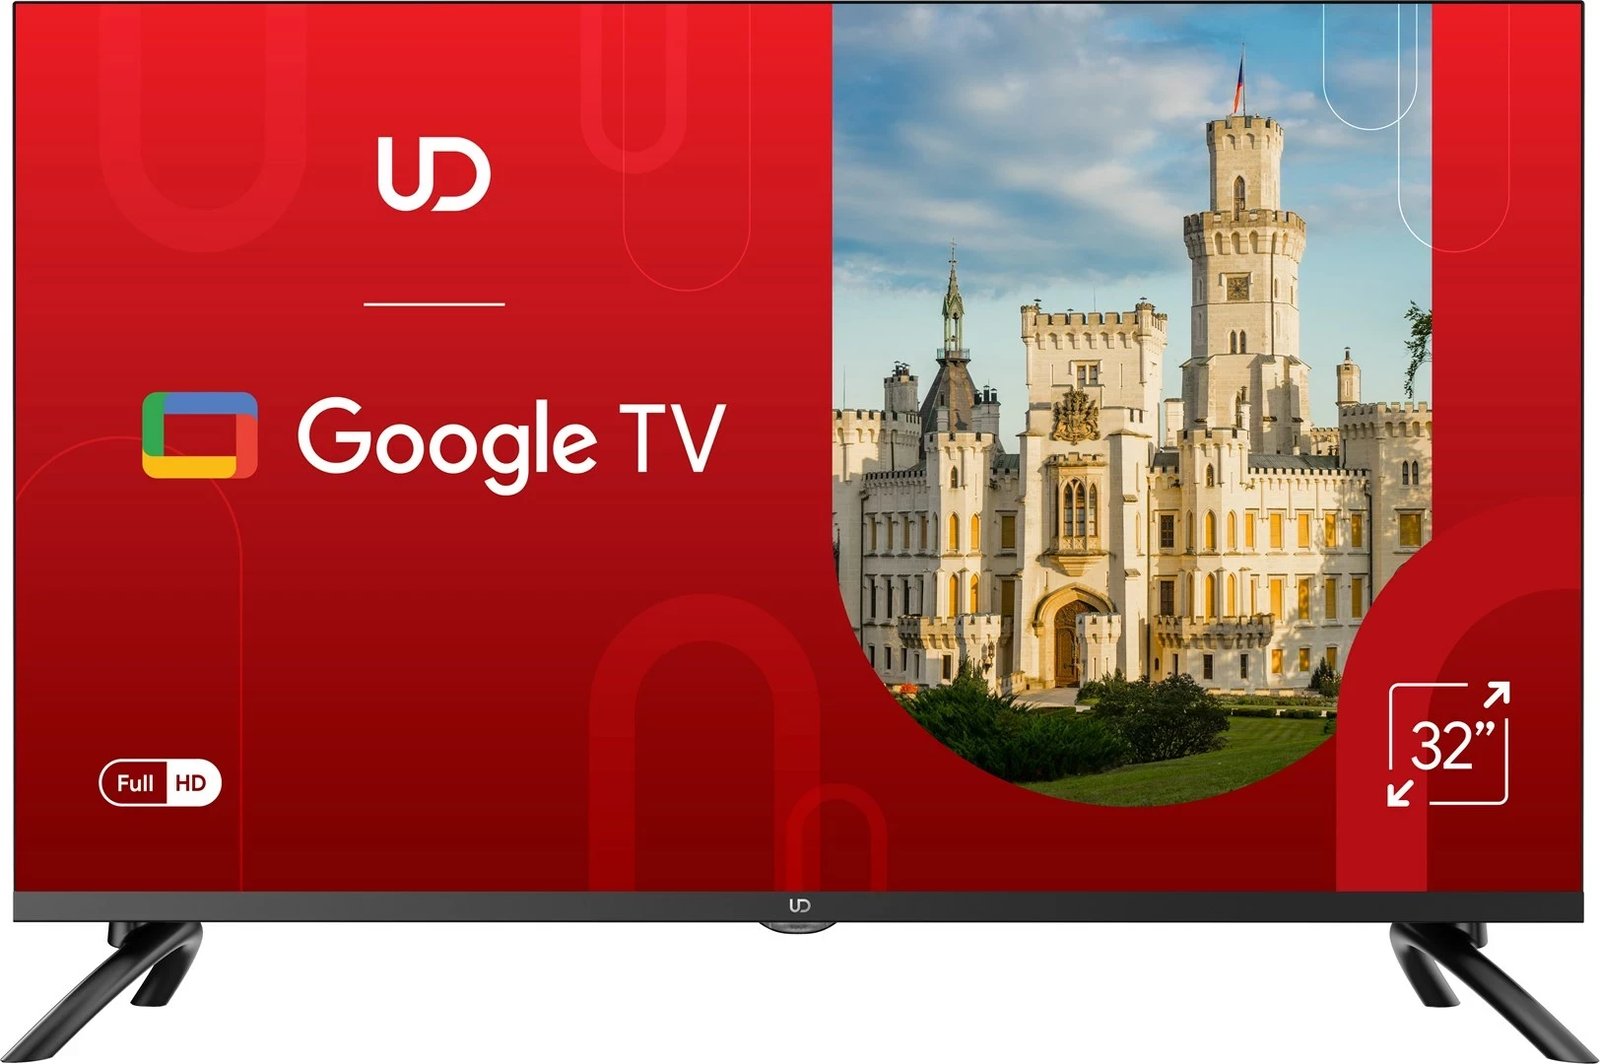 Televizor UD 32GF5210S 32", Full HD, D-LED, i zi